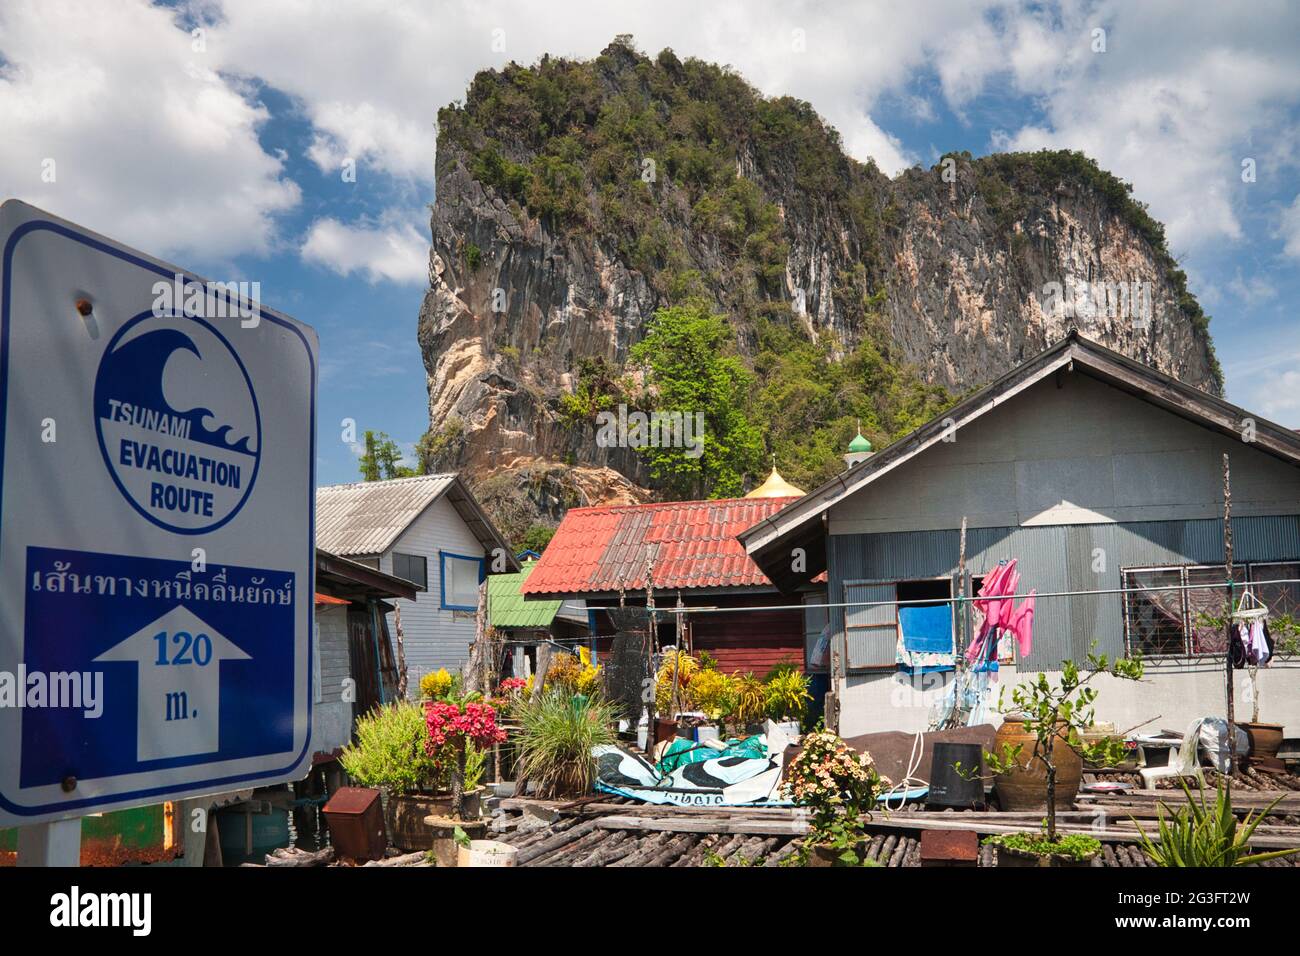 Ein Wasserdorf auf Stelzen in der Phang Nga Bay Thailand gebaut. Ein Schild, das zeigt, wo man evakuieren sollte, wenn ein Tsunami passieren würde Stockfoto